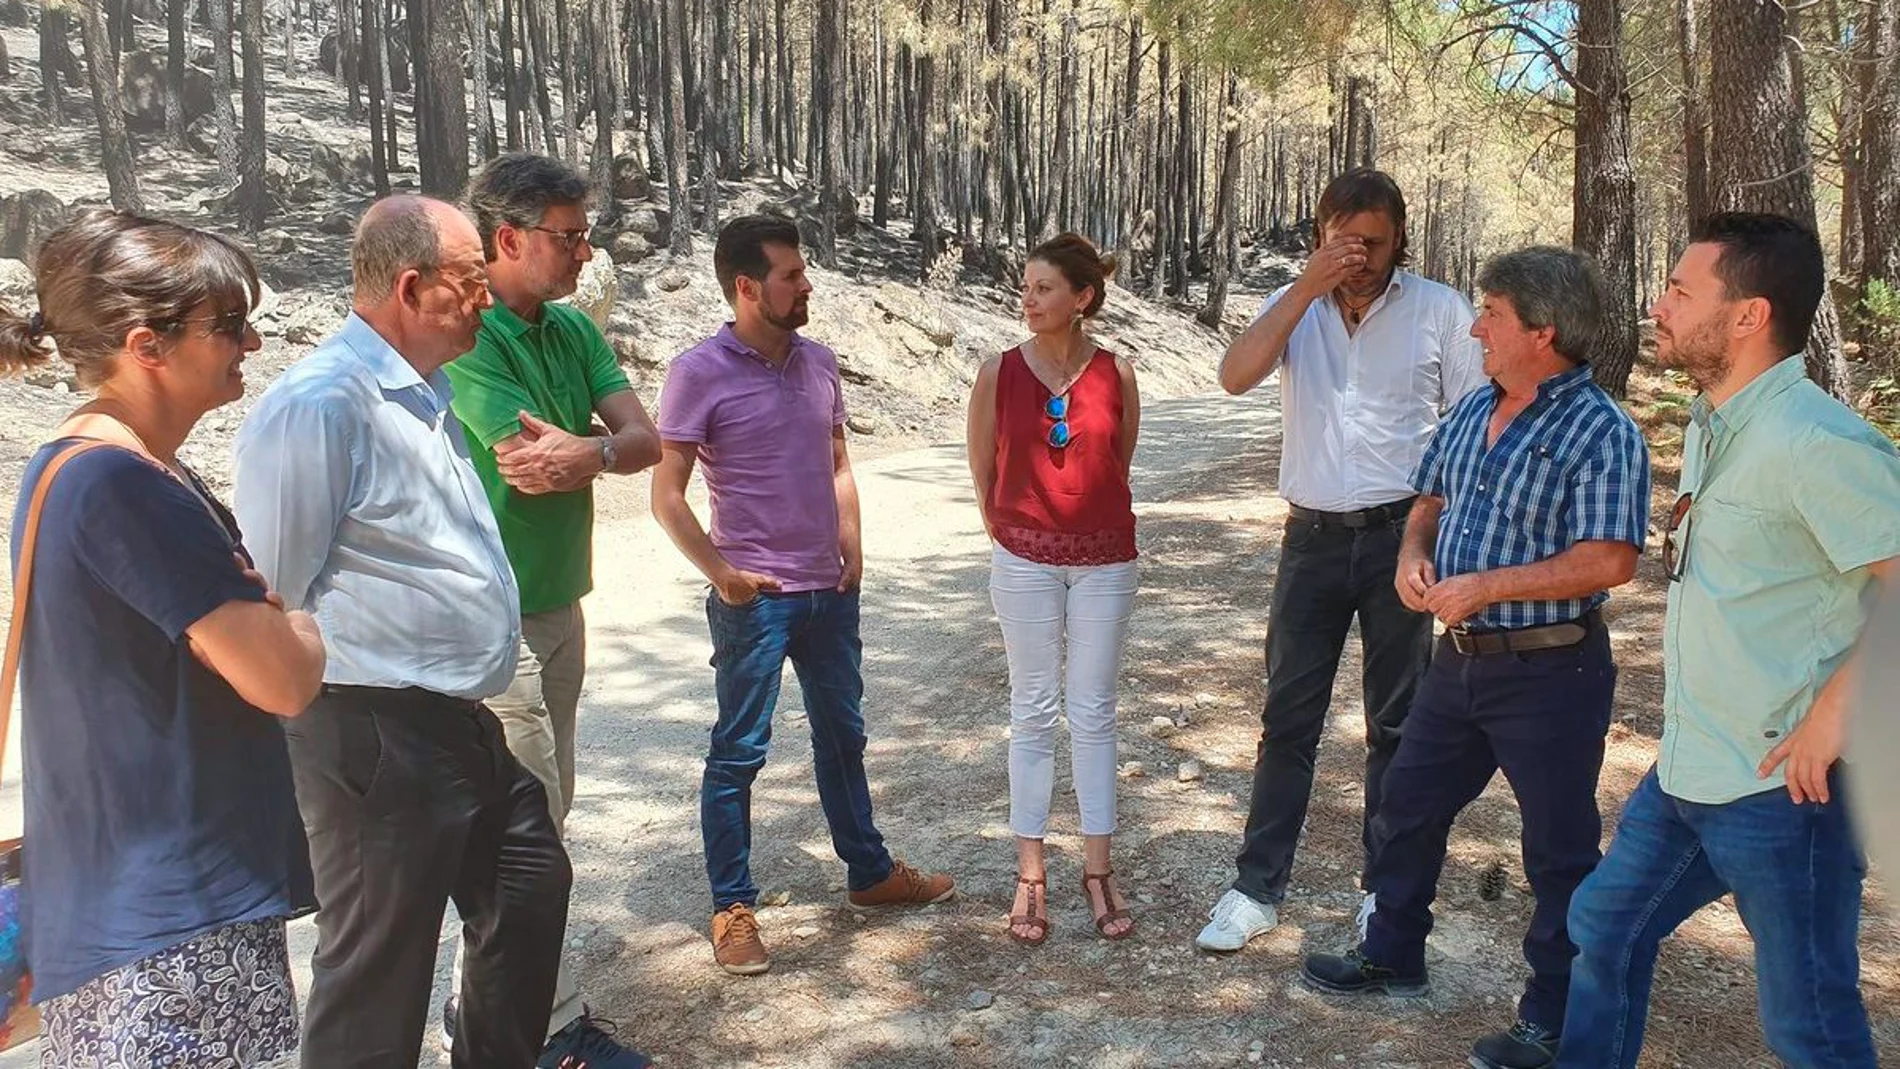 Luis Tudanca visita la zona afectada por el fuego en el Valle del Tiétar abulense